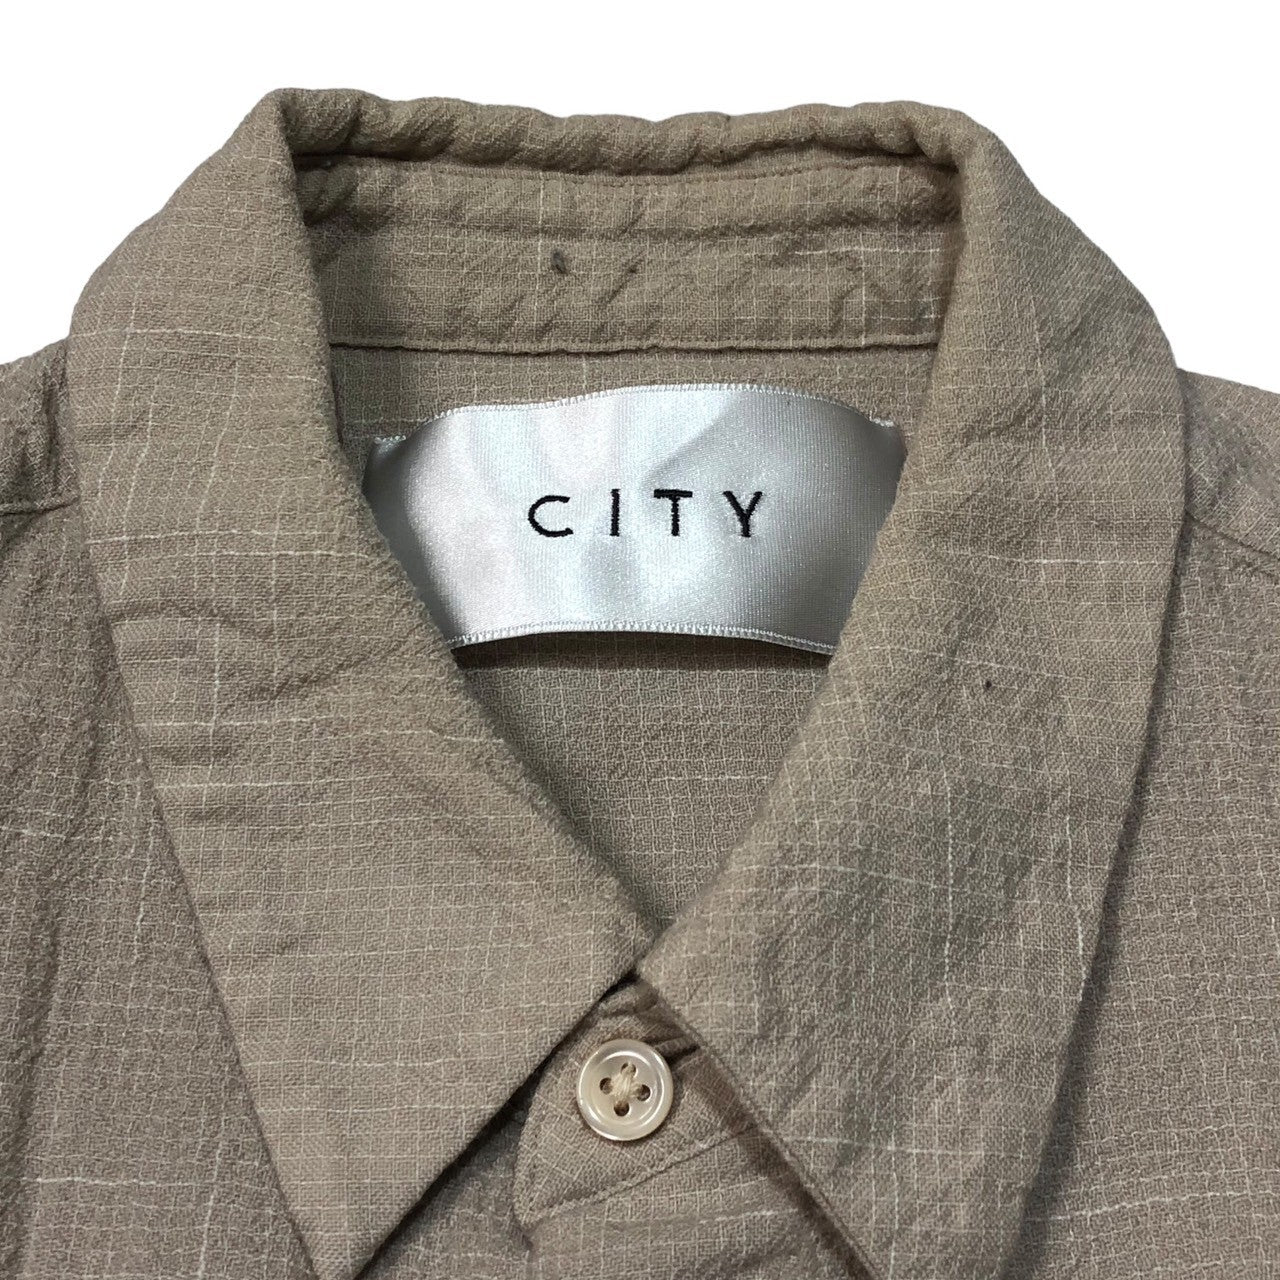 CITY(シティー) 21SS CHECK SHORT SLEEVE SHIRTS/チェックショートスリーブシャツ 111302220 SIZE 1(S) ベージュ